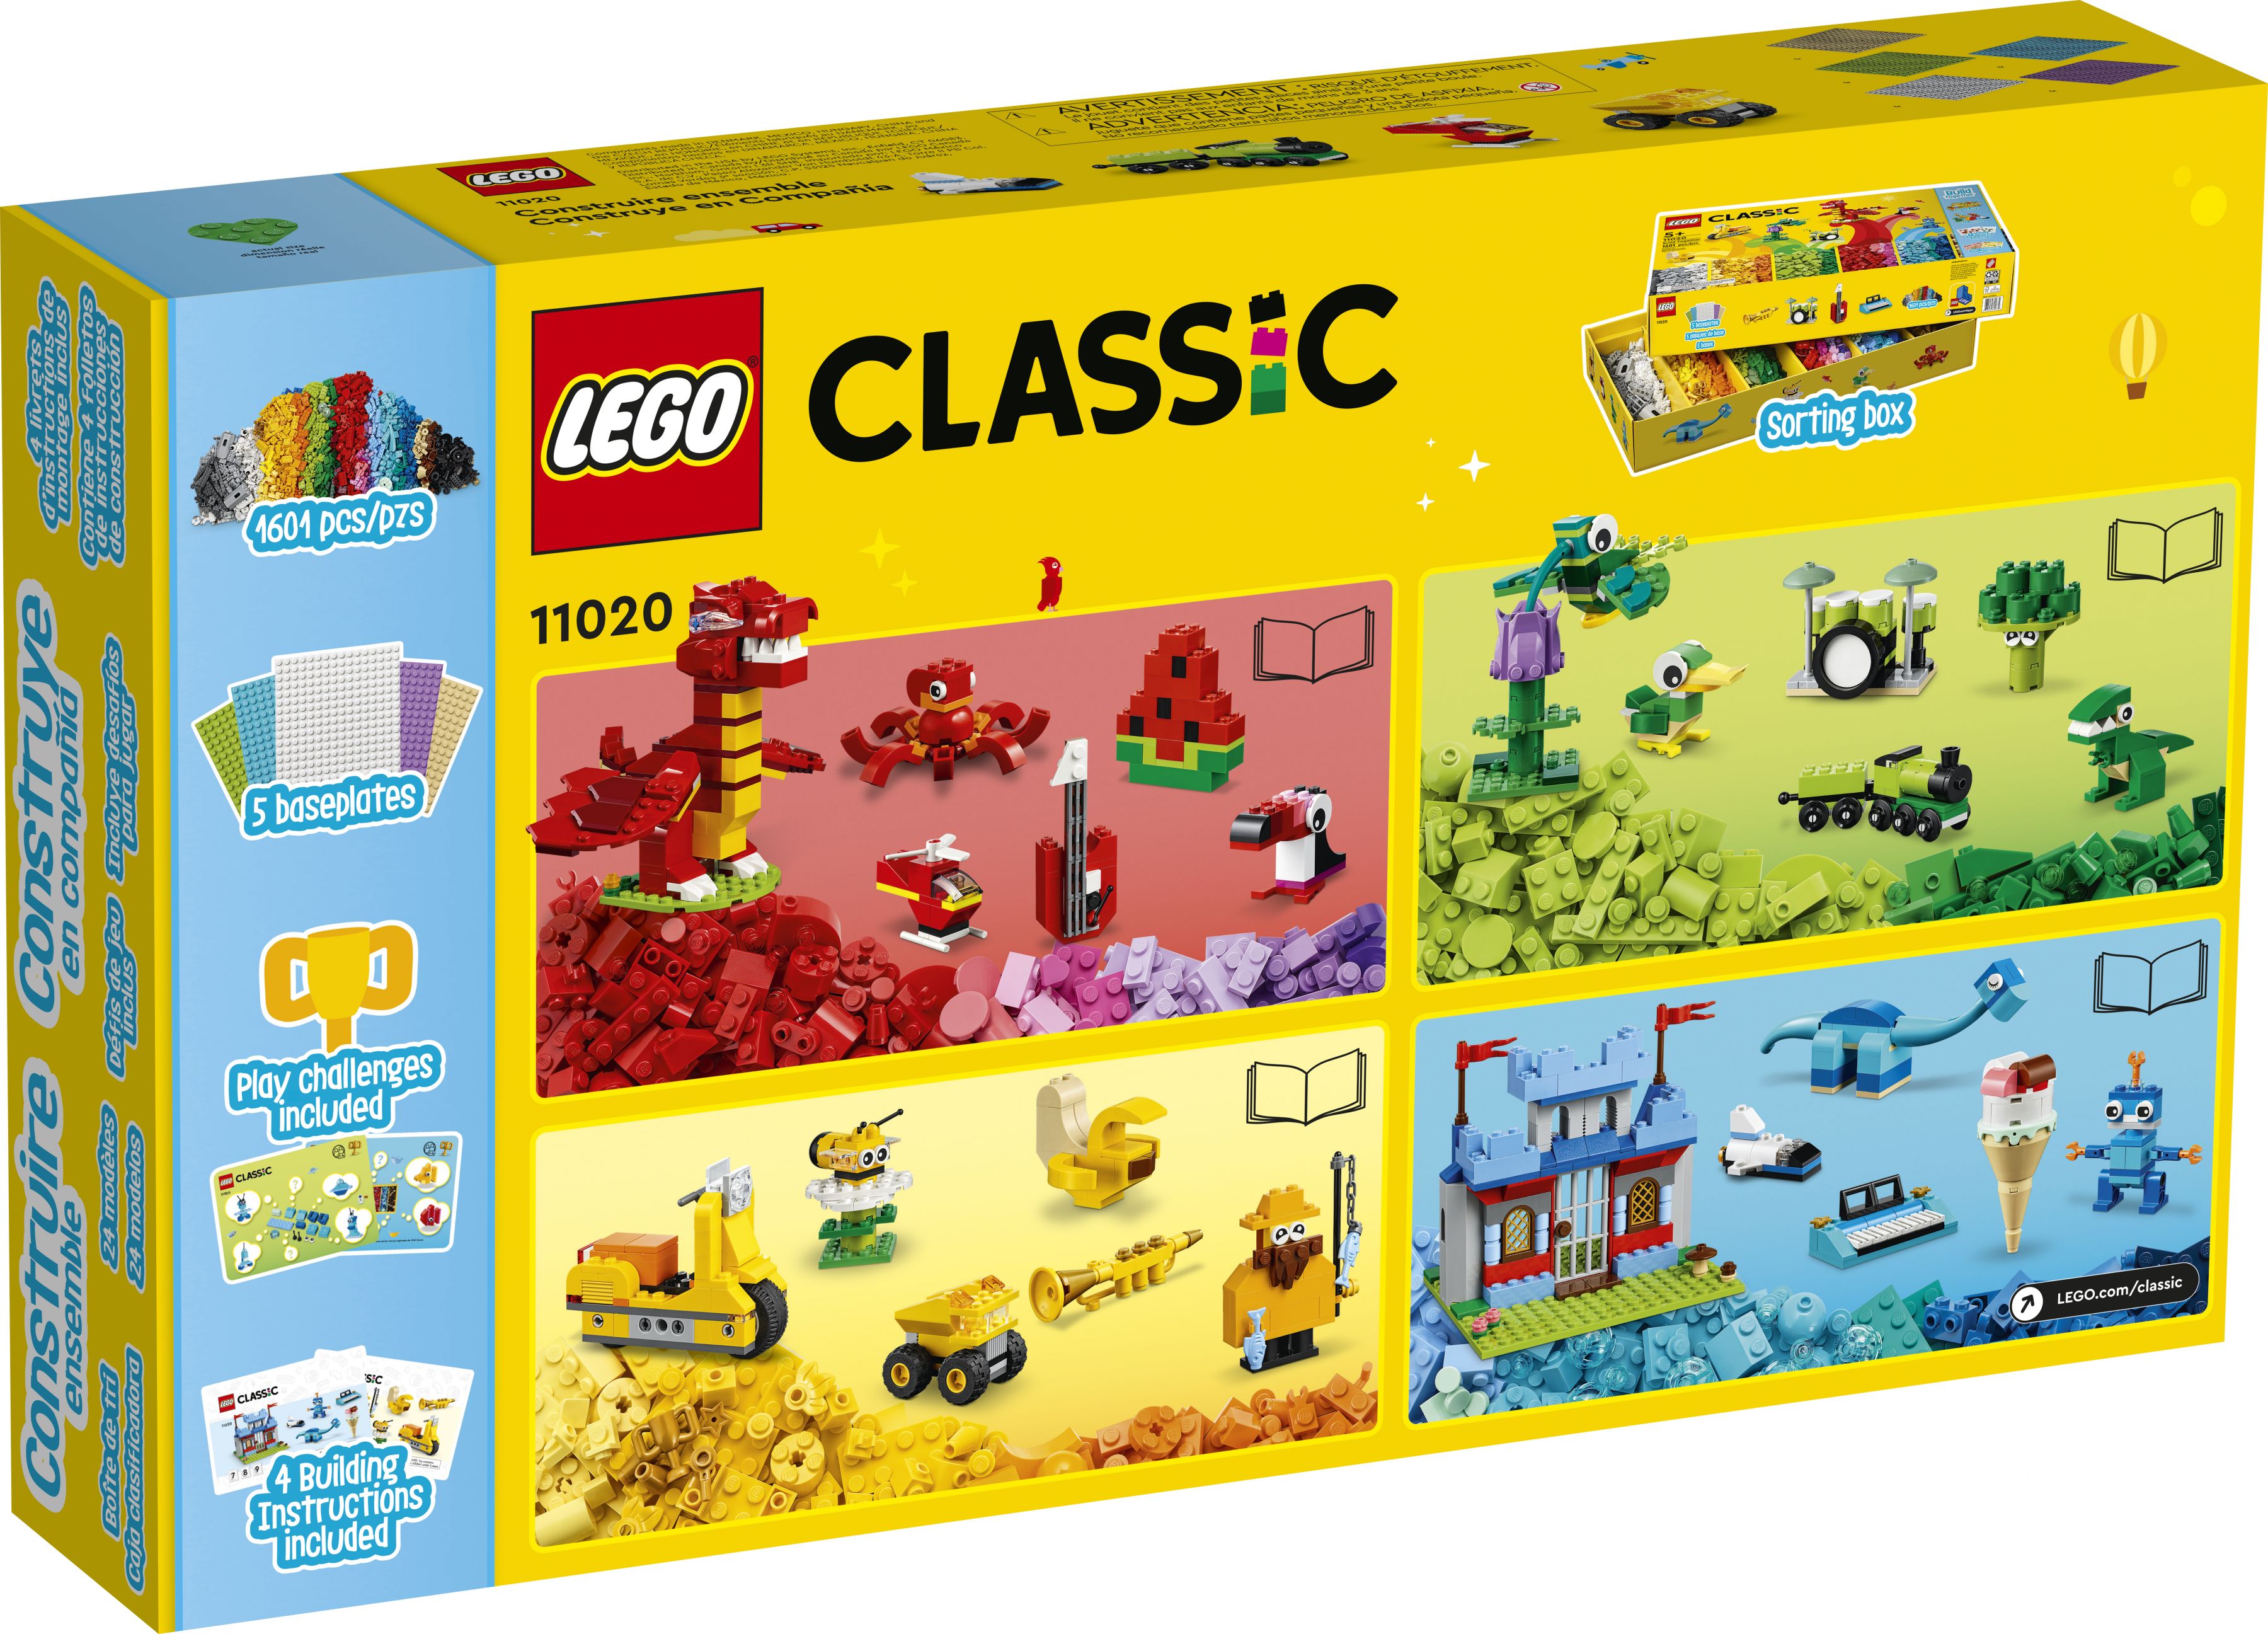 LEGO Classic 11020 Gemeinsam bauen LEGO_11020_Box5_v39.jpg